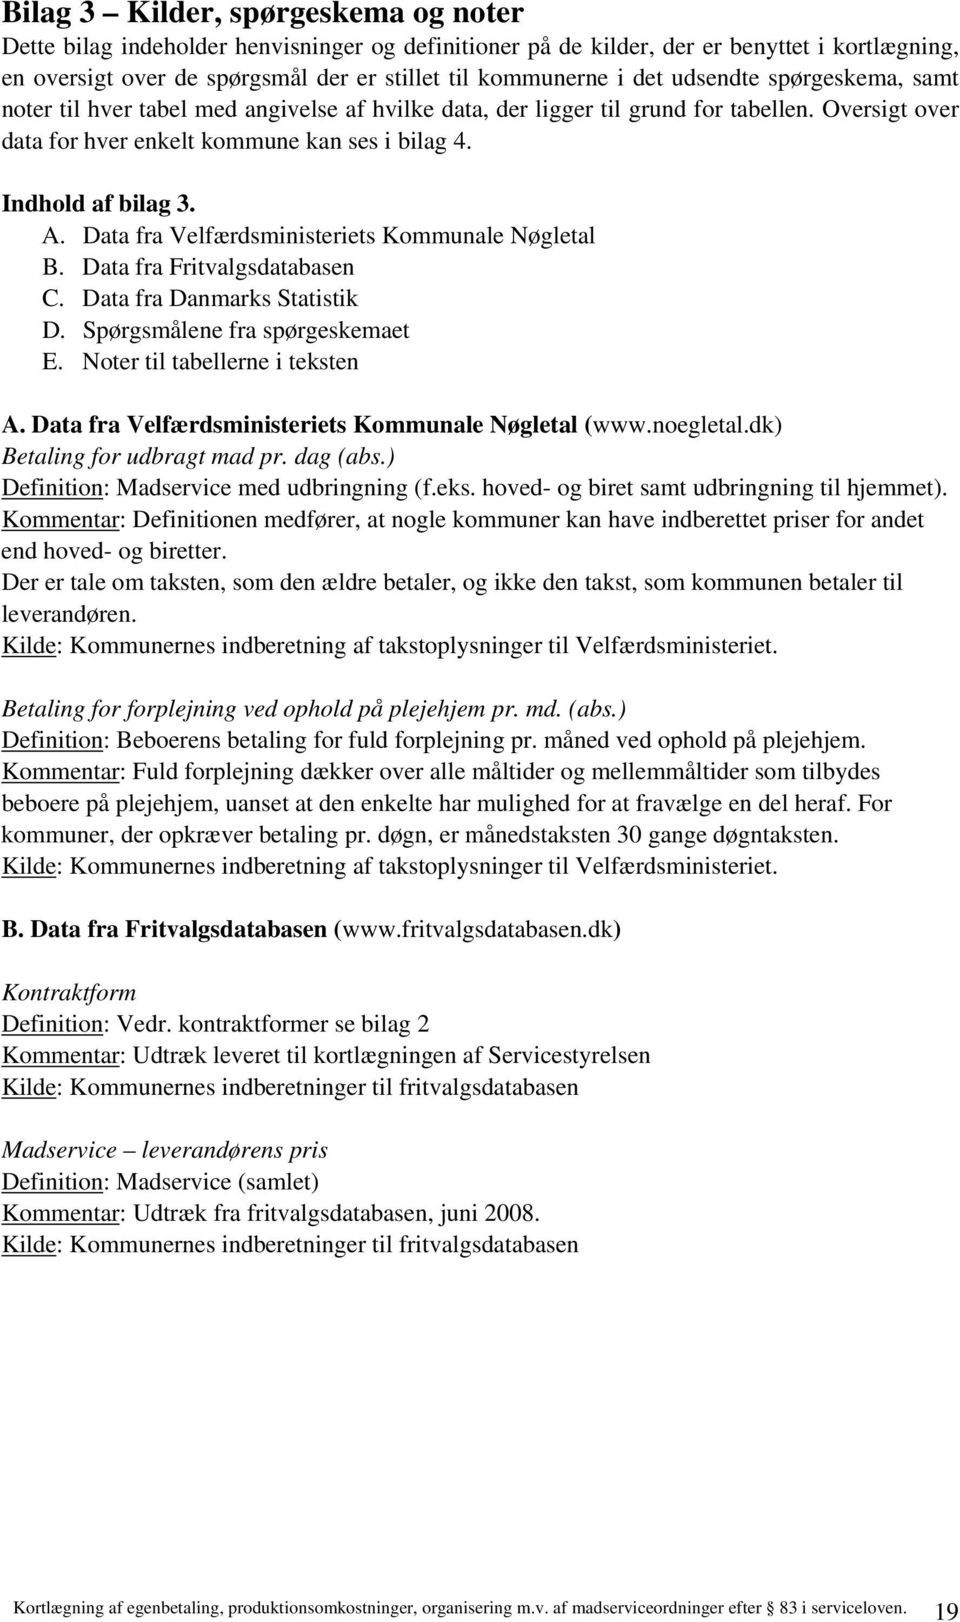 Data fra Velfærdsministeriets Kommunale Nøgletal B. Data fra Fritvalgsdatabasen C. Data fra Danmarks Statistik D. Spørgsmålene fra spørgeskemaet E. Noter til tabellerne i teksten A.